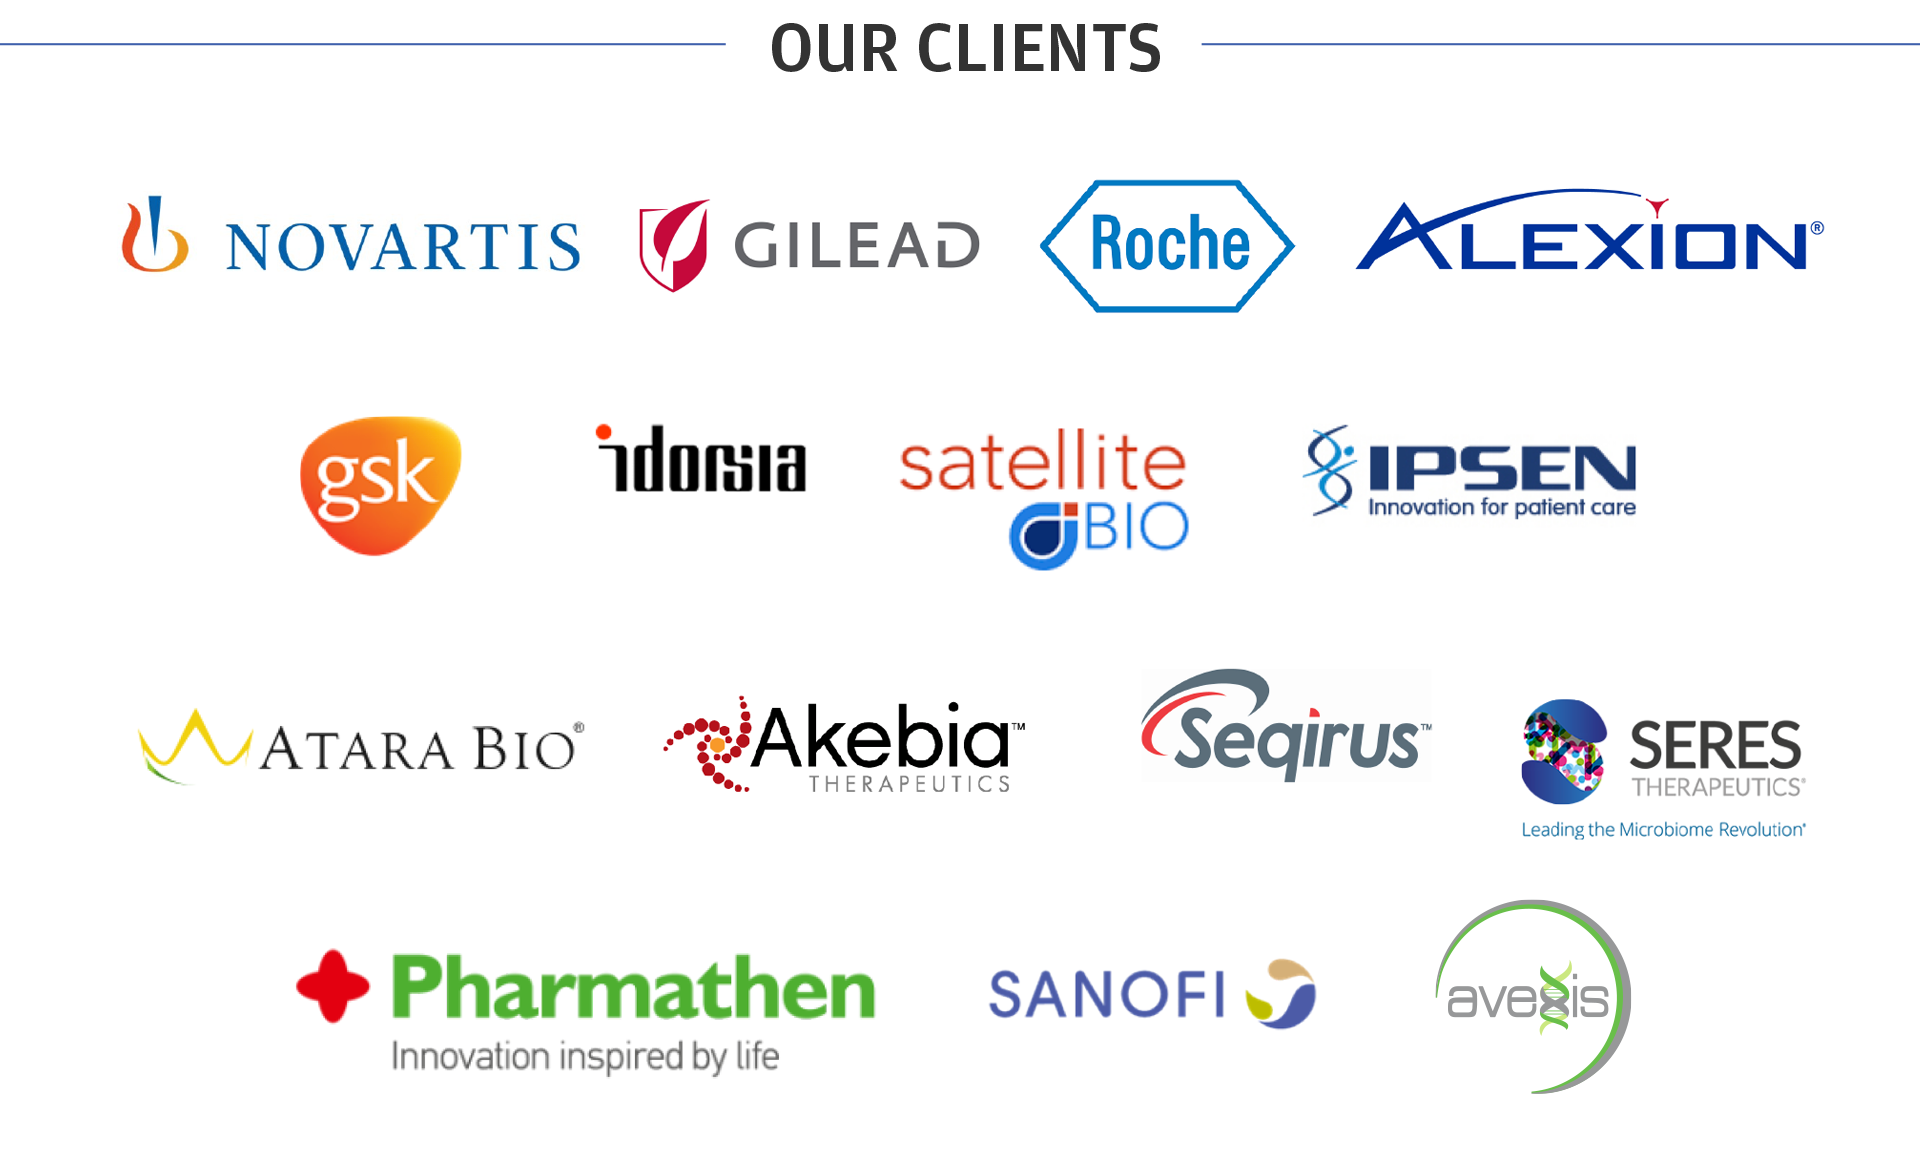 Our Clients include Gilead, Pharmathen, Novartis, Roche, Alexion, GSK, Idorsia, Satellite Bio, IPSEN, Atara Bio, Akebia Therapeutics, Seqirus, Seres Therapeutics, Avexis and Sofi.